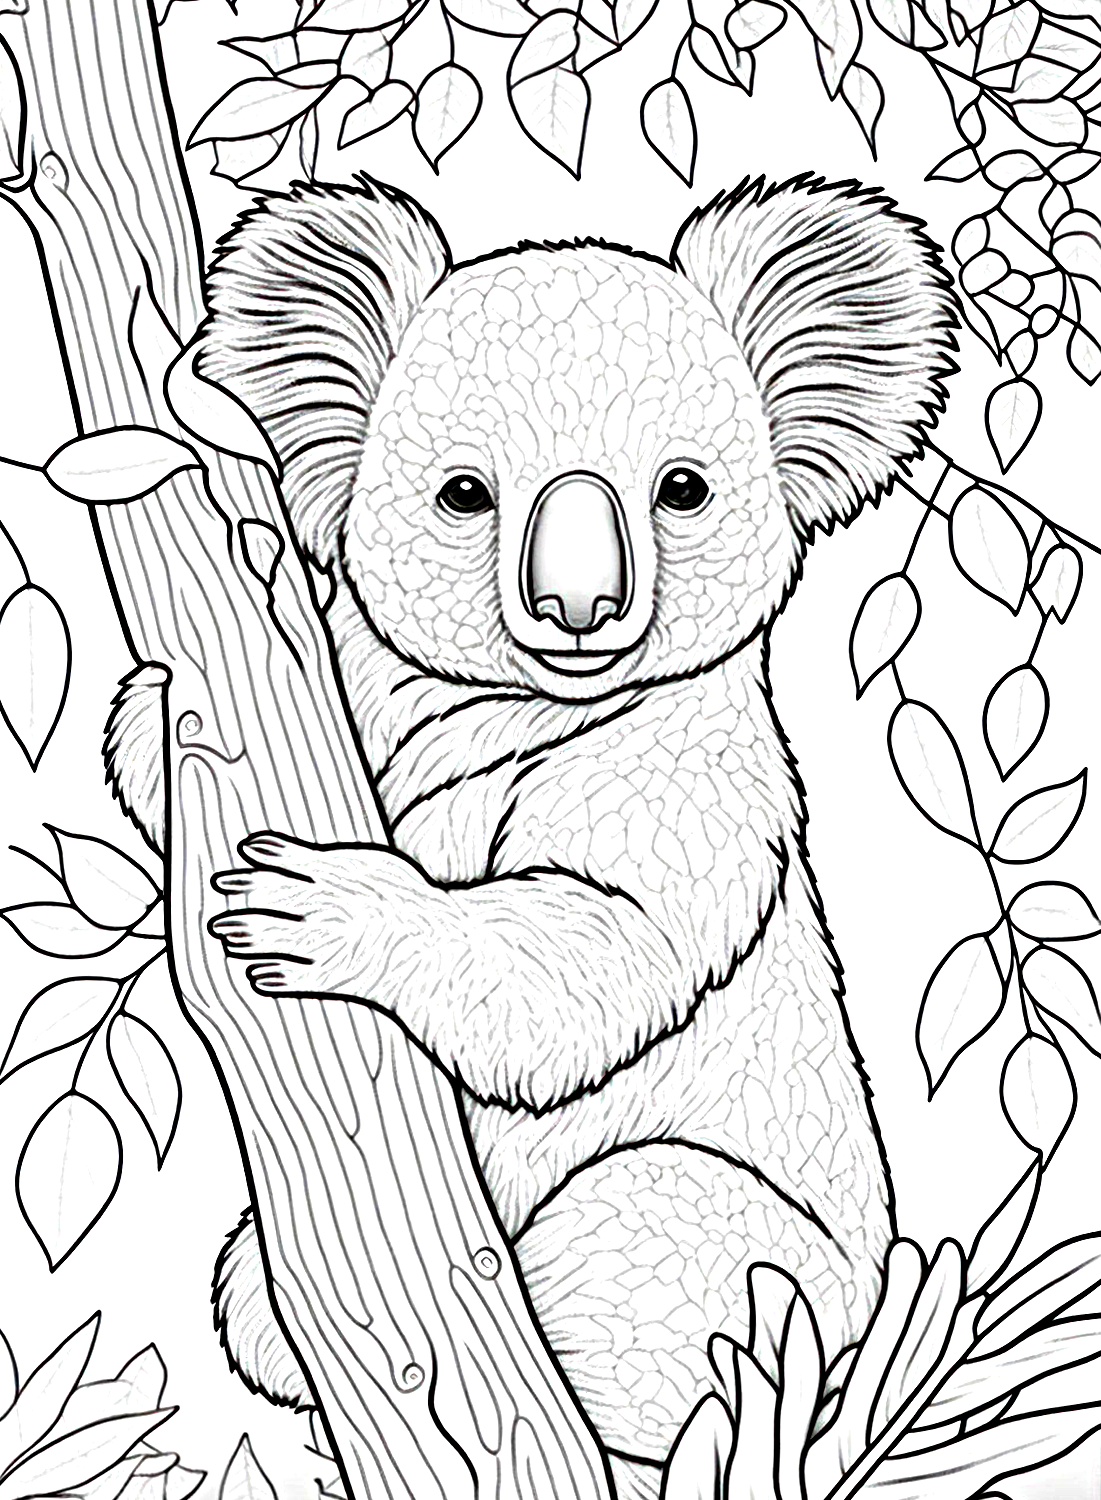 Koala in tree coloring sheet